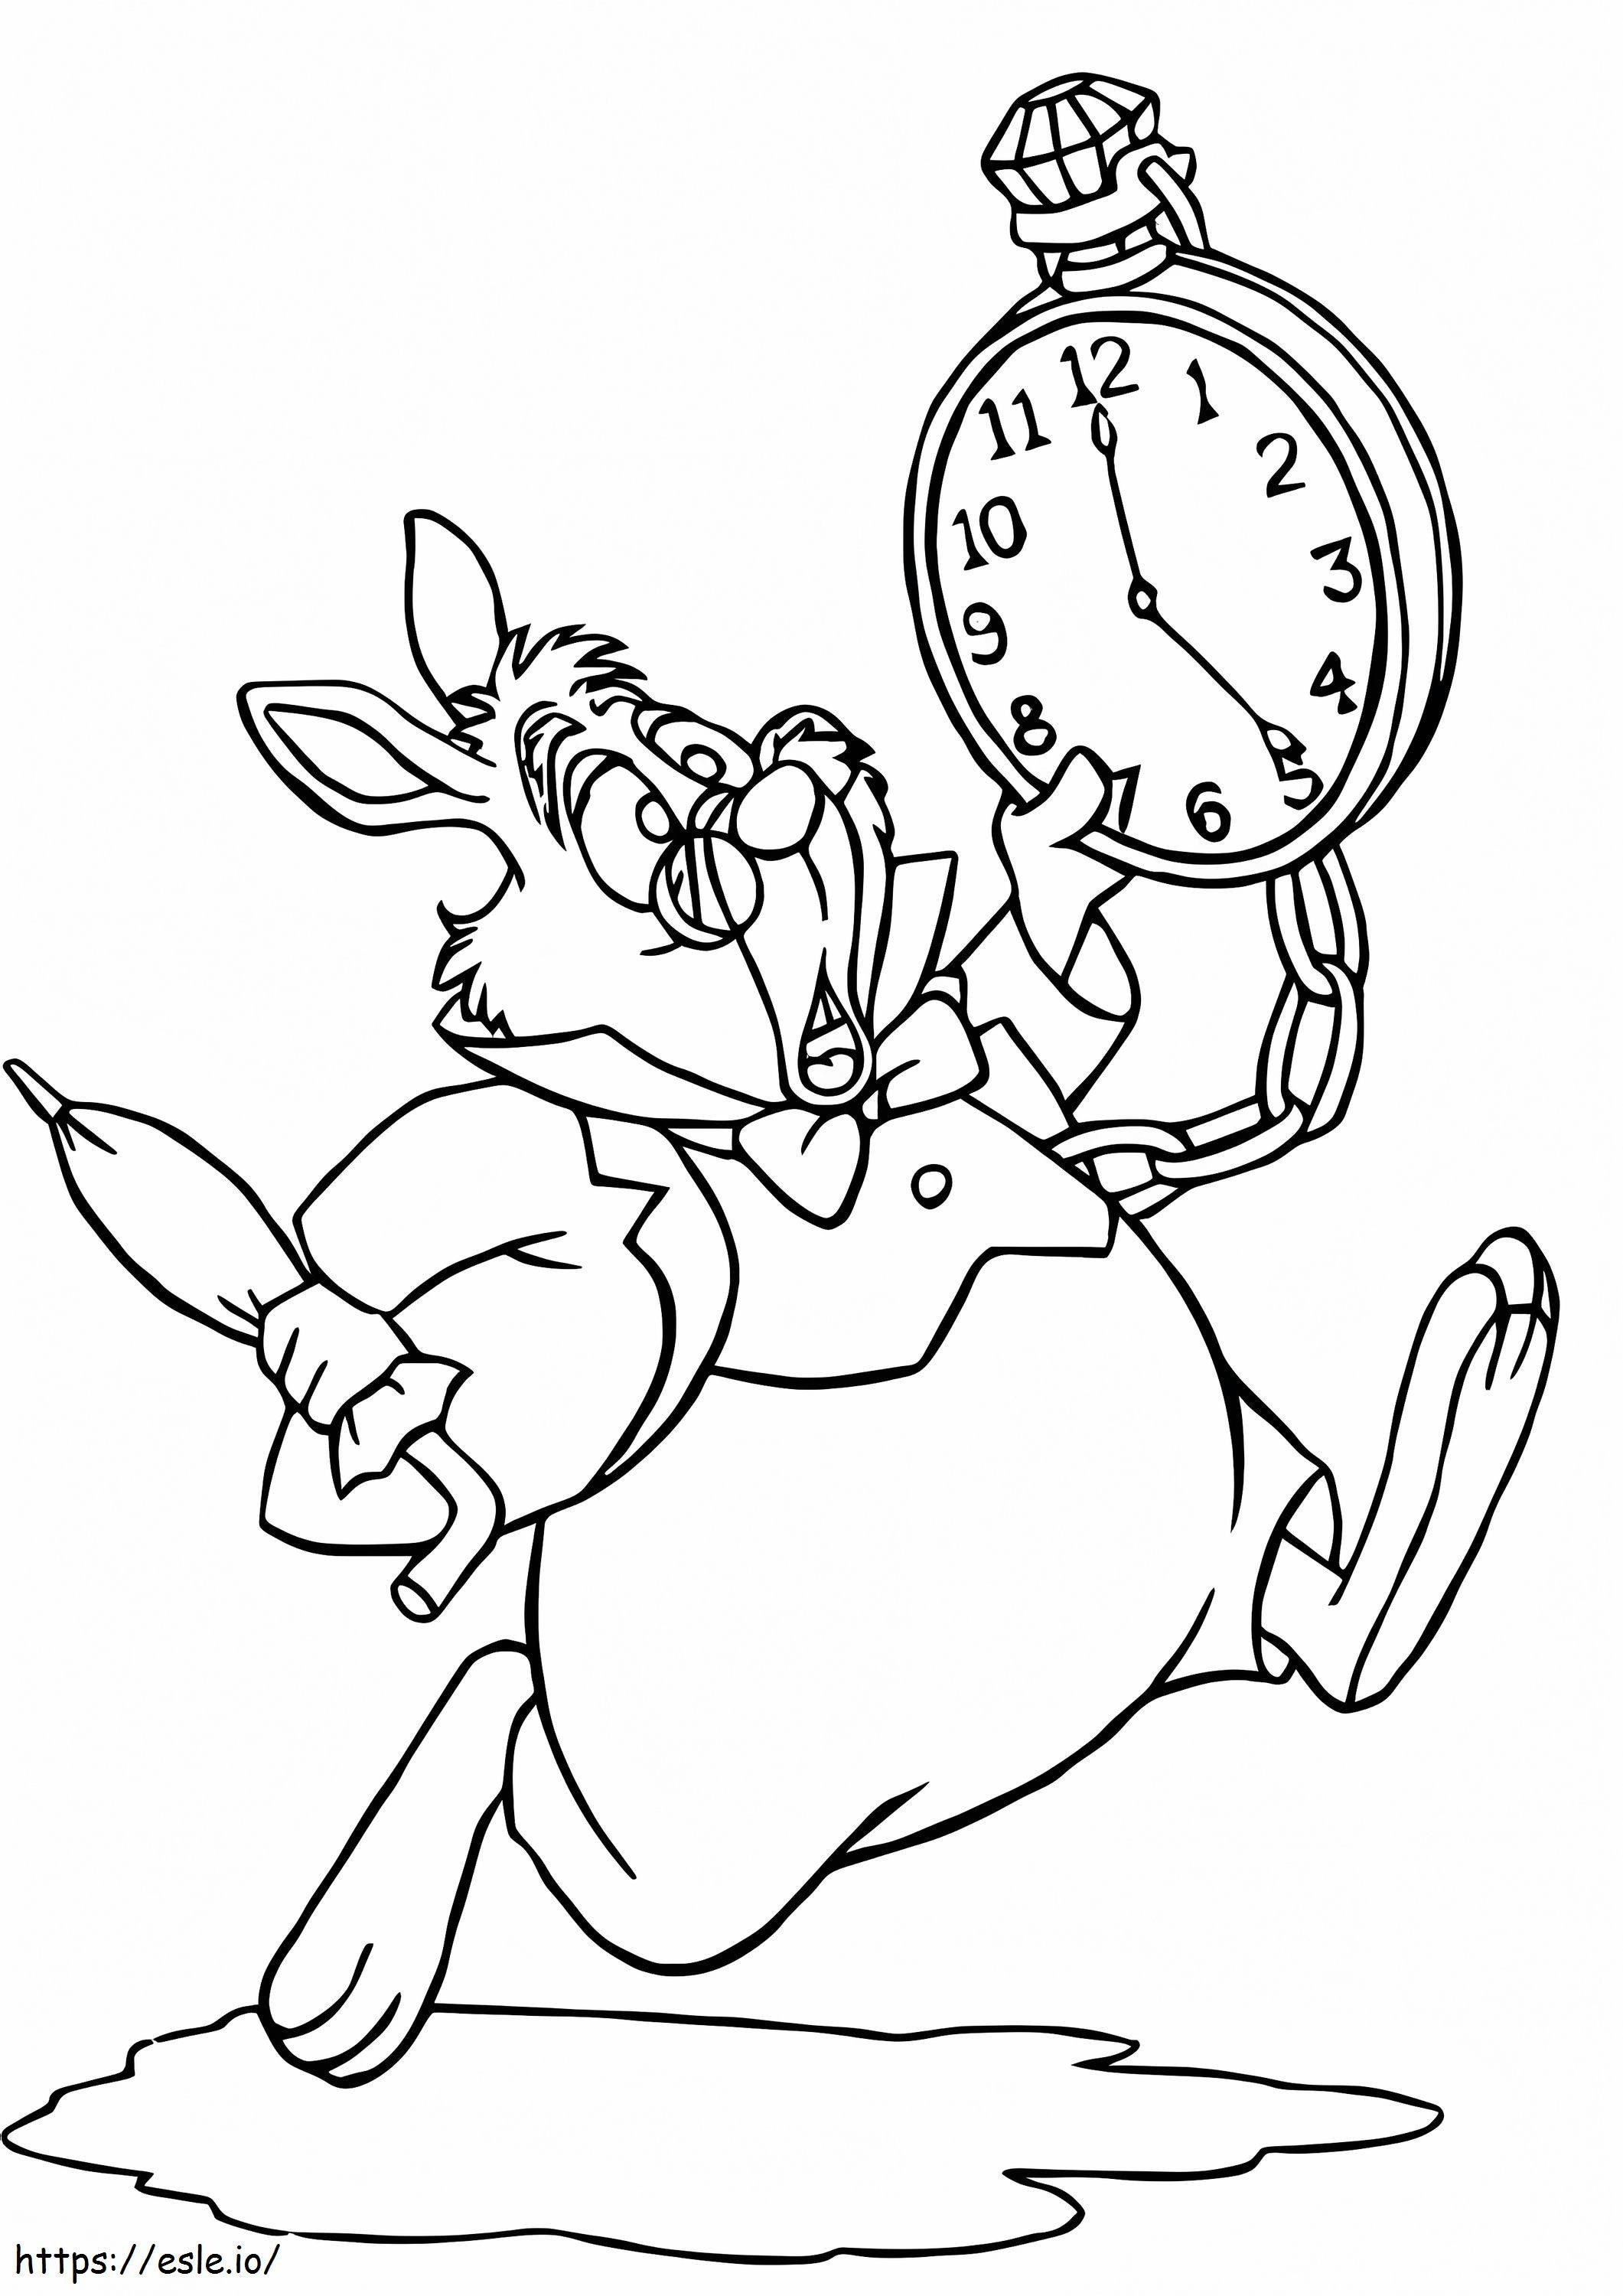 Kreskówka królik trzymający zegar kolorowanka